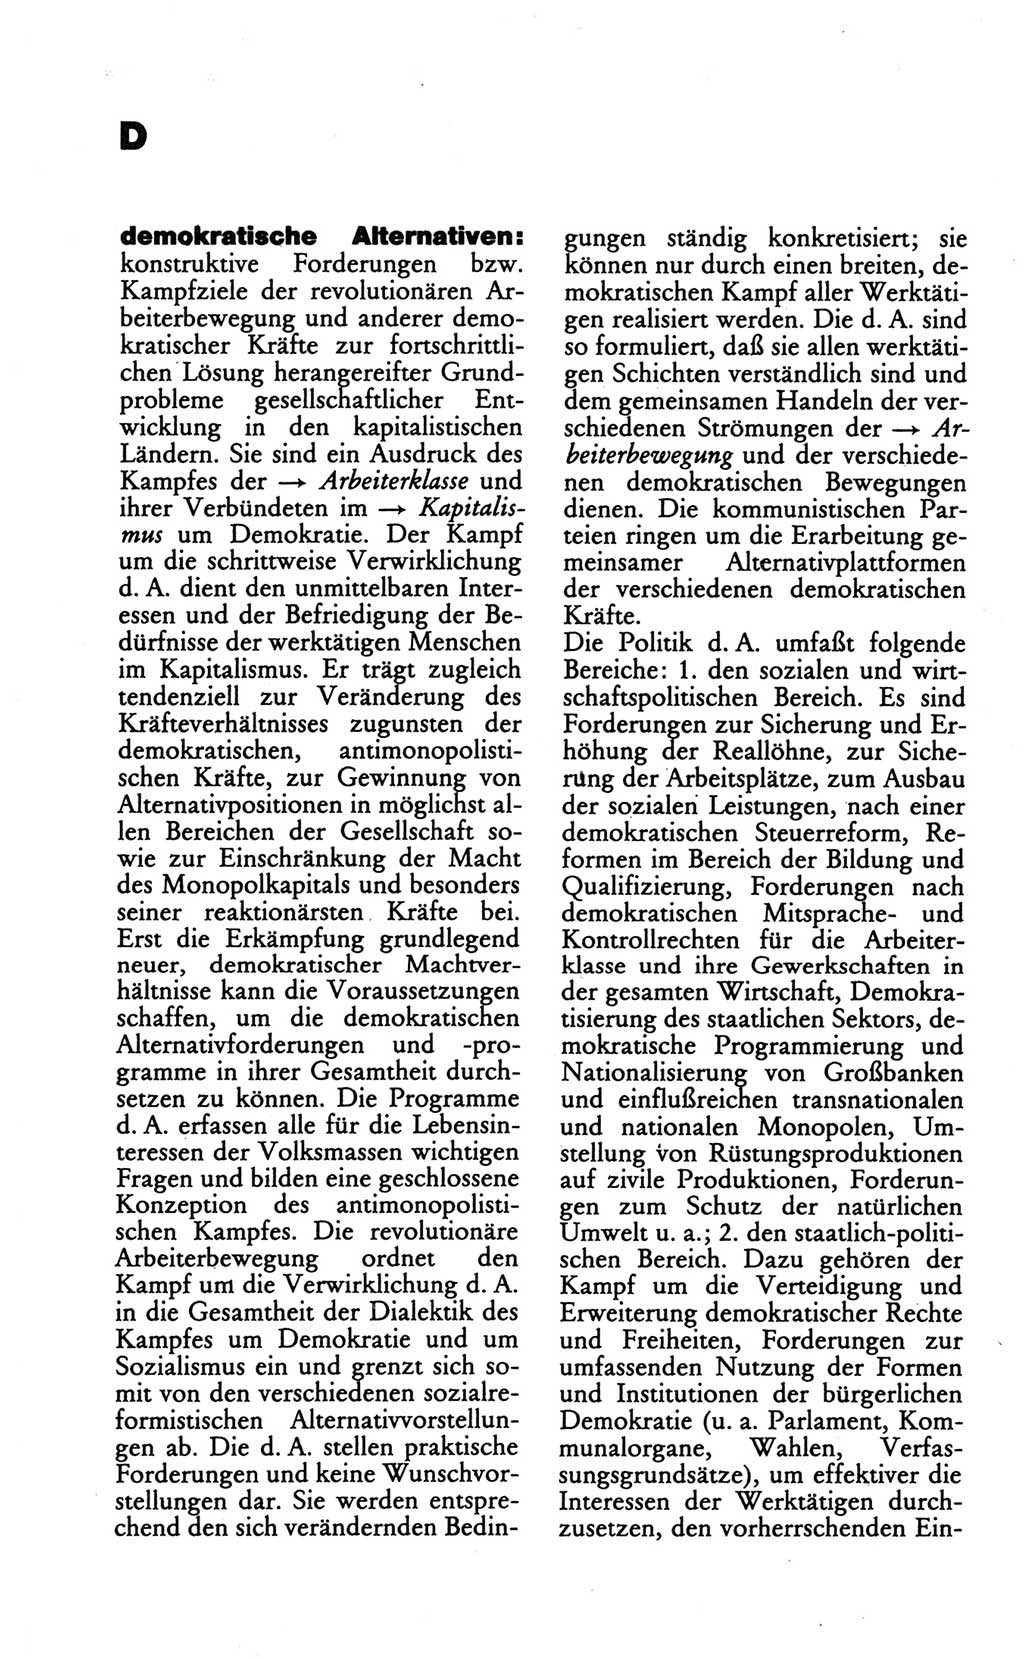 Wörterbuch des wissenschaftlichen Kommunismus [Deutsche Demokratische Republik (DDR)] 1986, Seite 70 (Wb. wiss. Komm. DDR 1986, S. 70)